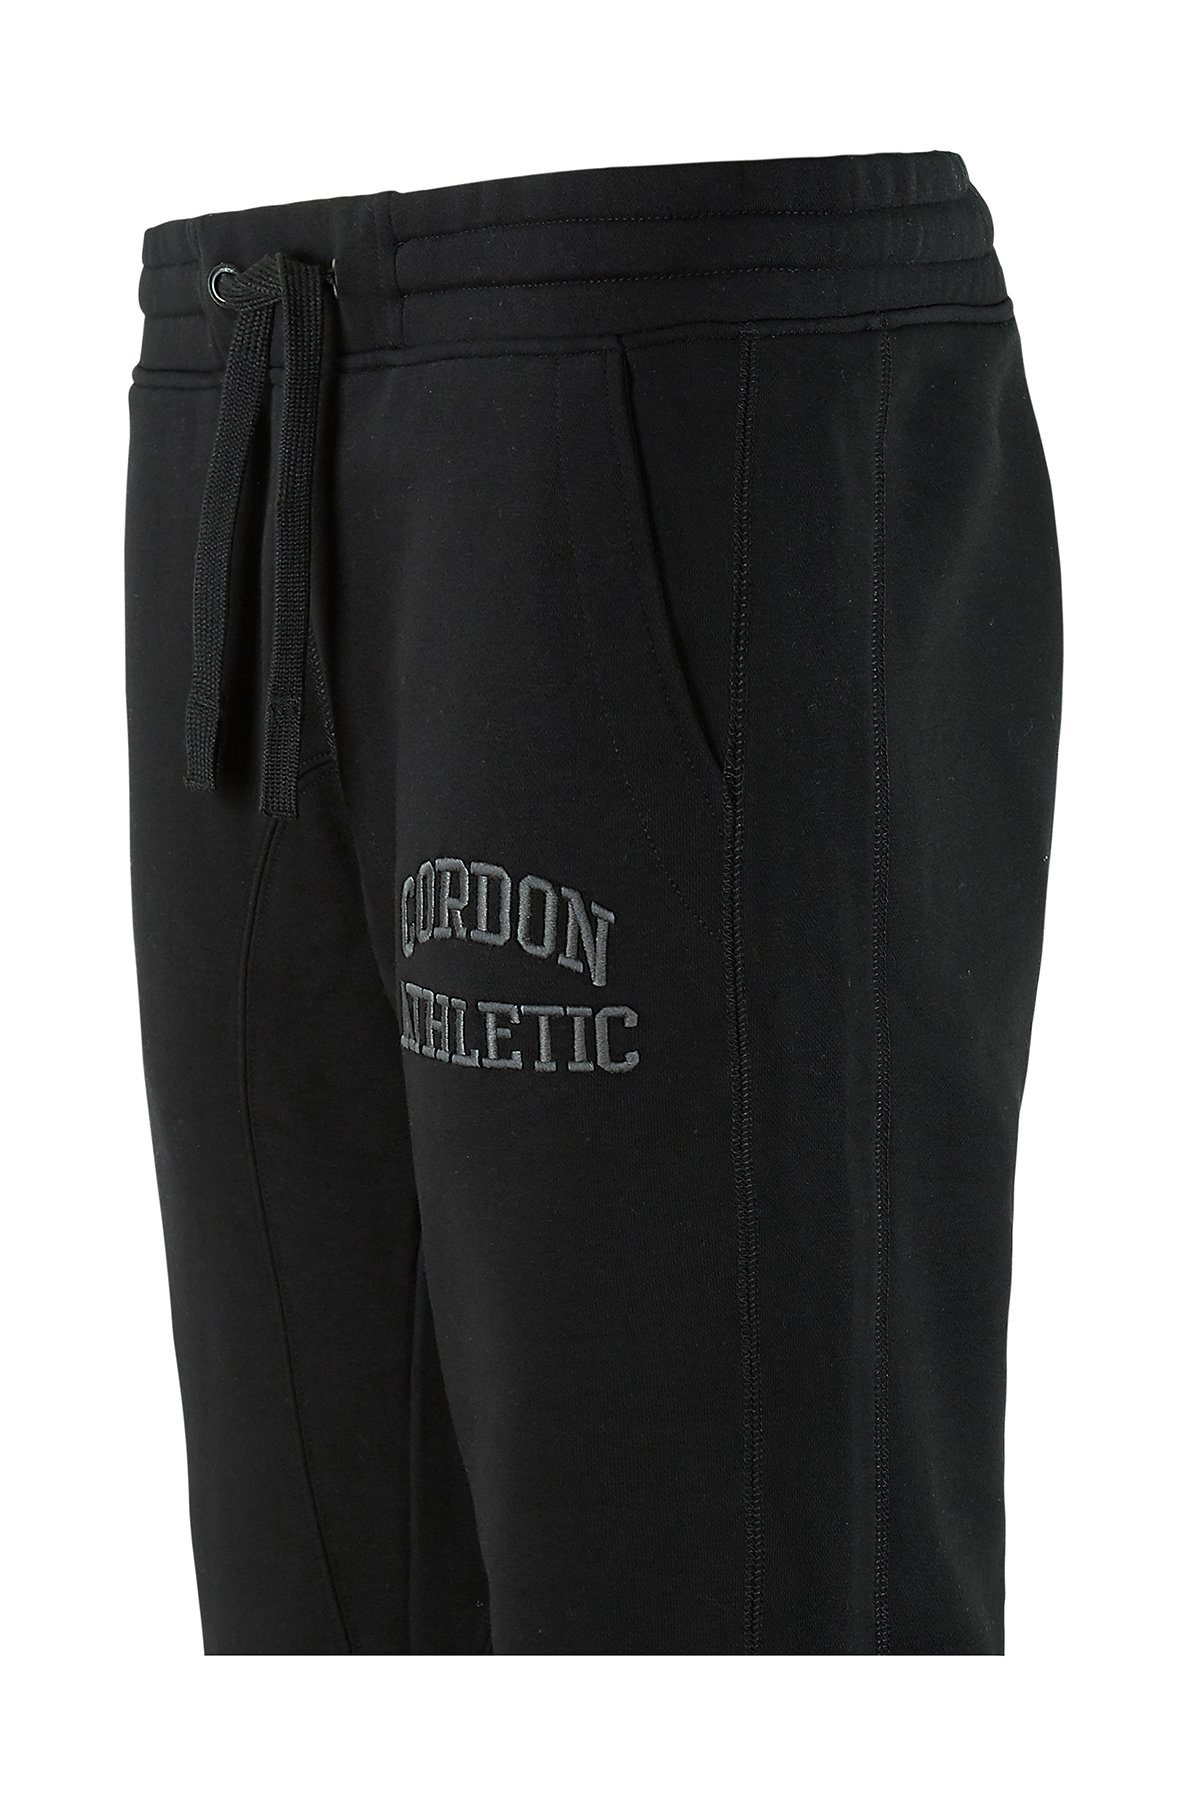 Cordon black 12 010 Sweatpants Max Sport (1-tlg)